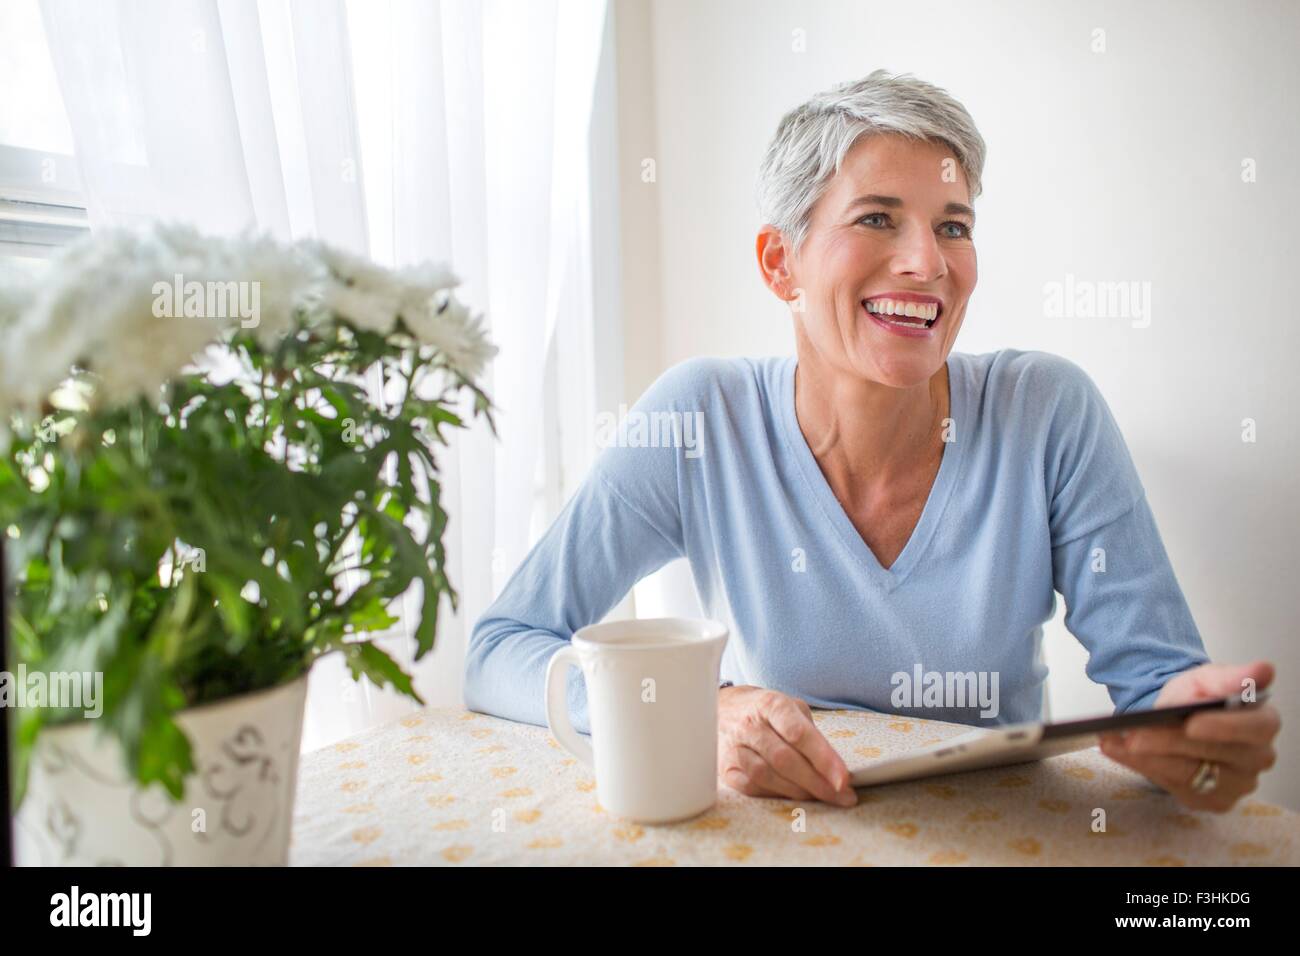 Femme mature aux cheveux gris avec des yeux bleus using digital tablet table de cuisine Banque D'Images